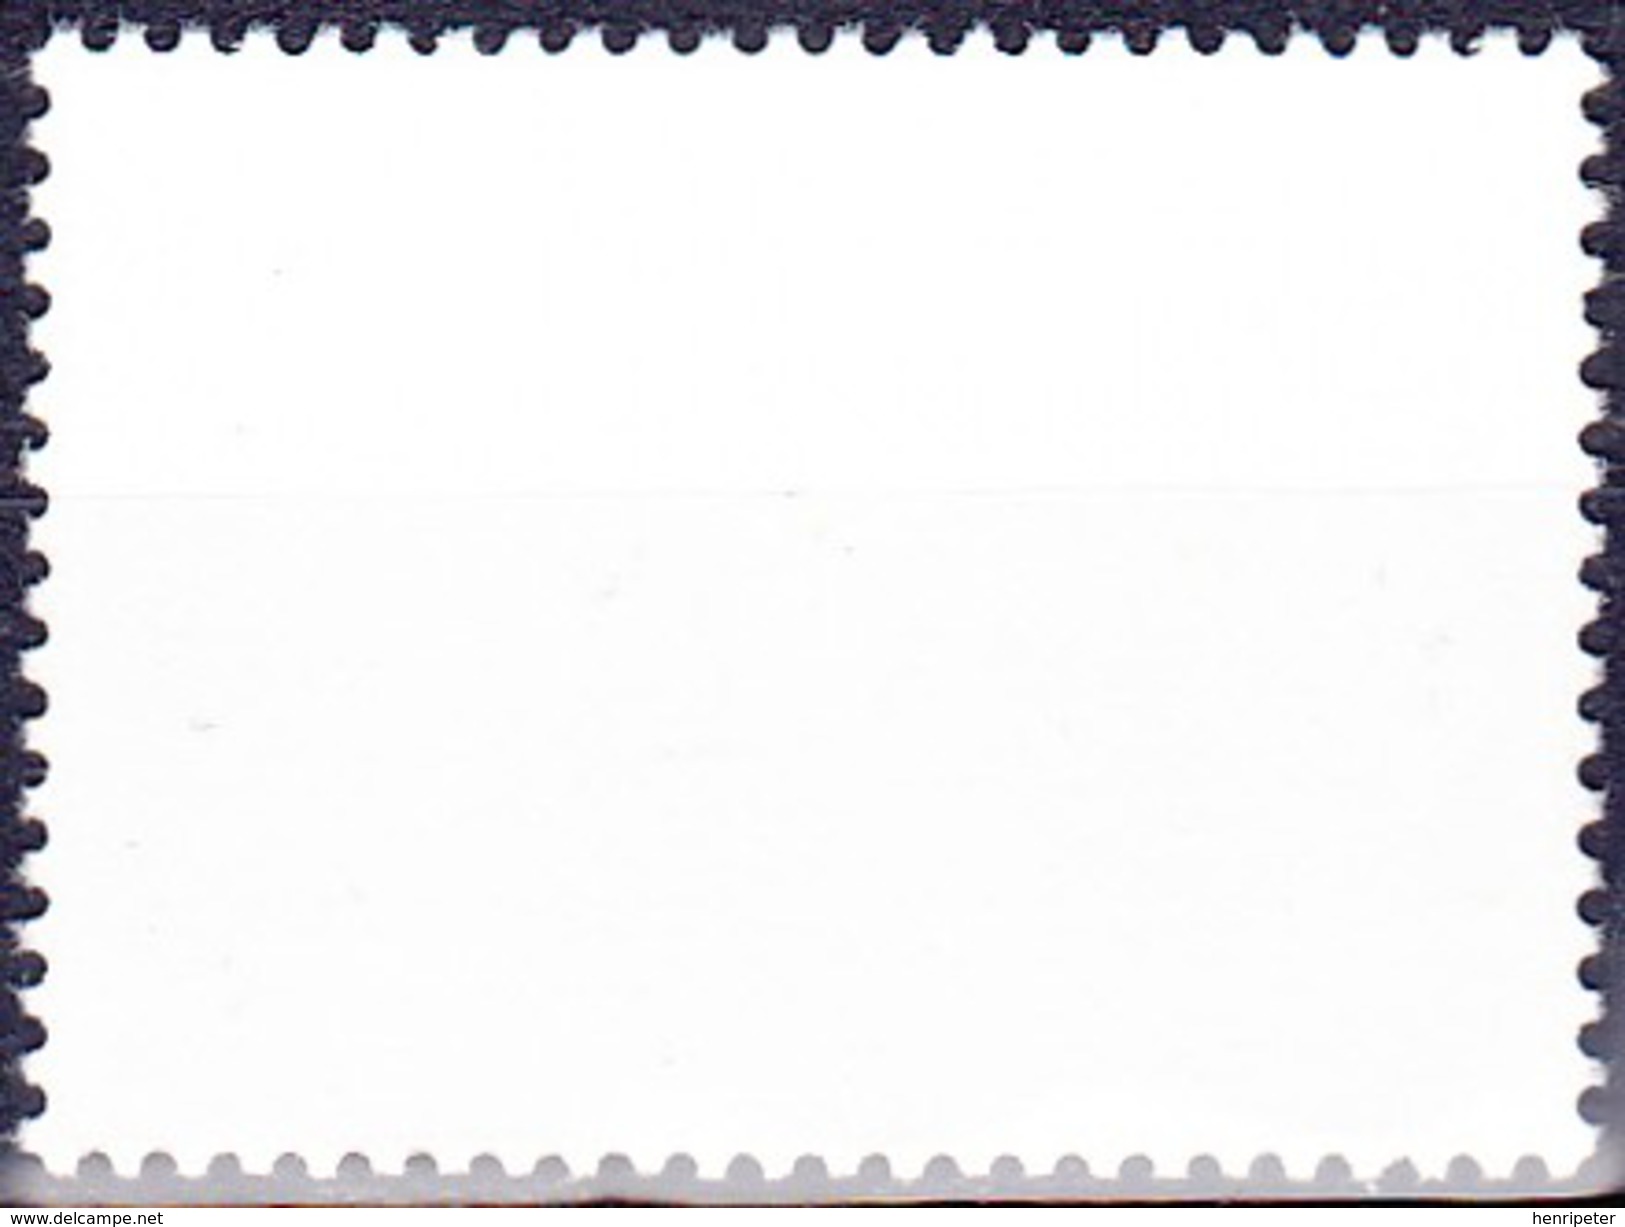 Timbre-poste Gommé Neuf** - Norden 95 Tourisme Village De Laufas - N° 779 (Yvert) - République D'Islande 1995 - Unused Stamps